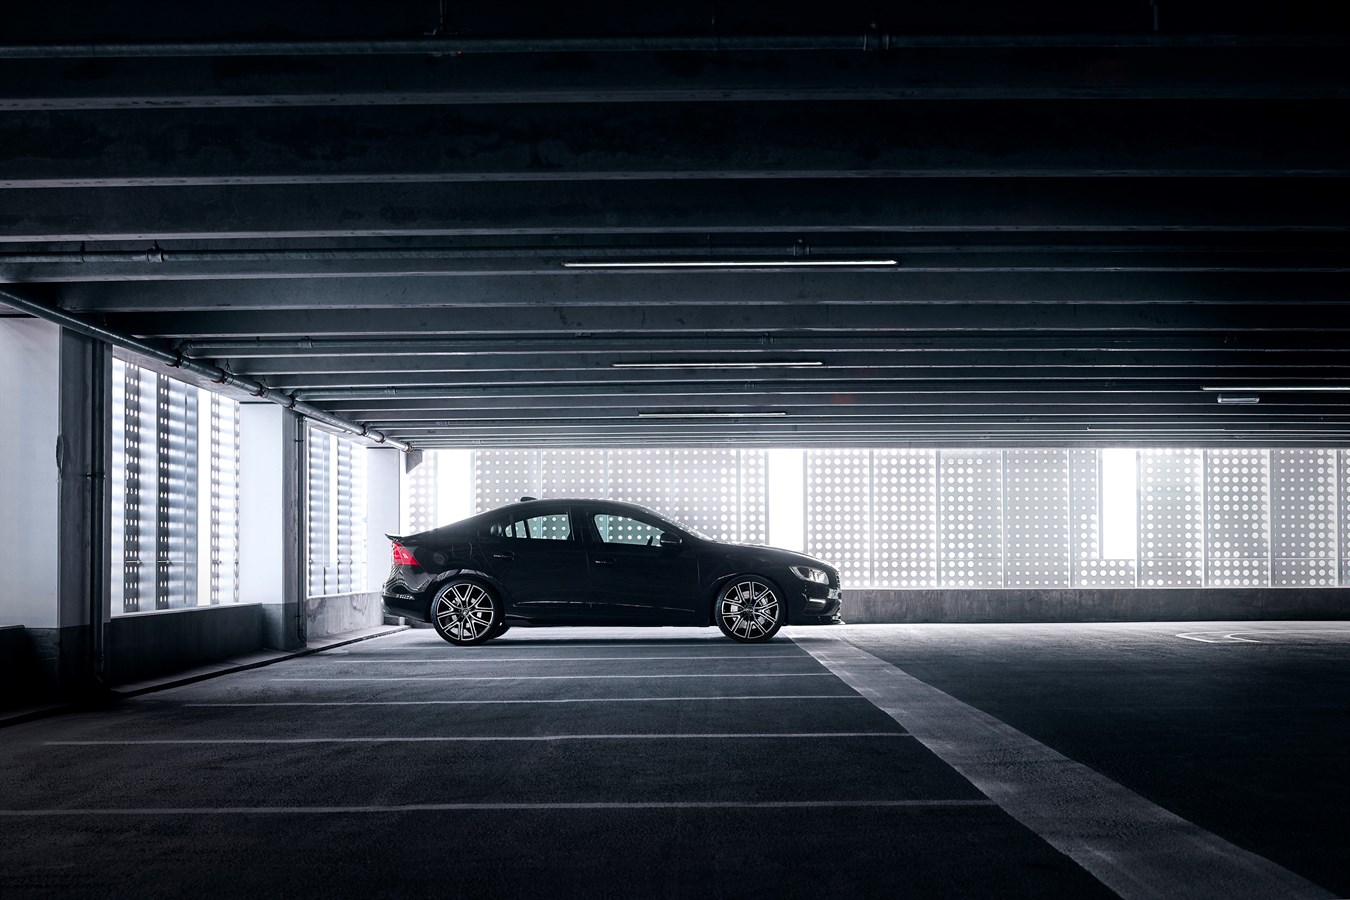 Uppdaterade Volvo S60 och V60 Polestar med aerodynamiska förbättringar i kolfiber som ger 30 procent mer marktryck   Polestar, Volvo Cars prestandamärke, har avslöjat modellår 18 av Volvo S60 och V60 Polestar med aerodynamiska komponenter i kolfiber som ökar marktrycket med 30 procent för förbättrad prestanda och väghållning. Ett begränsat antal av 1500 bilar kommer att produceras där samtliga får ett unikt nummer på instegslisten.